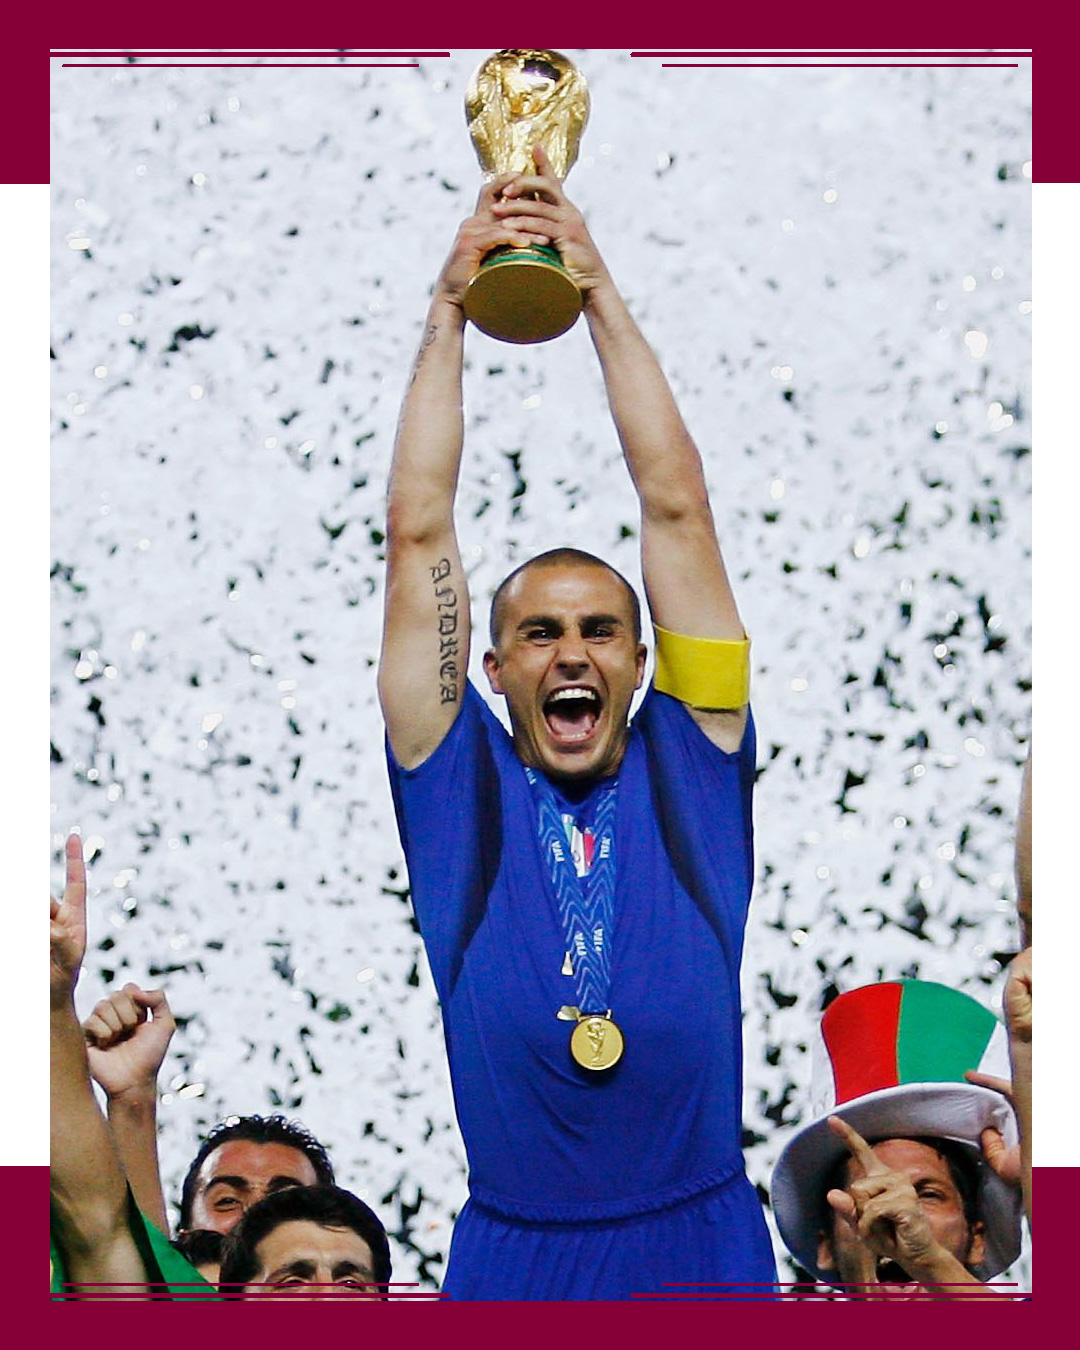 Italia, Campeona en el 2006